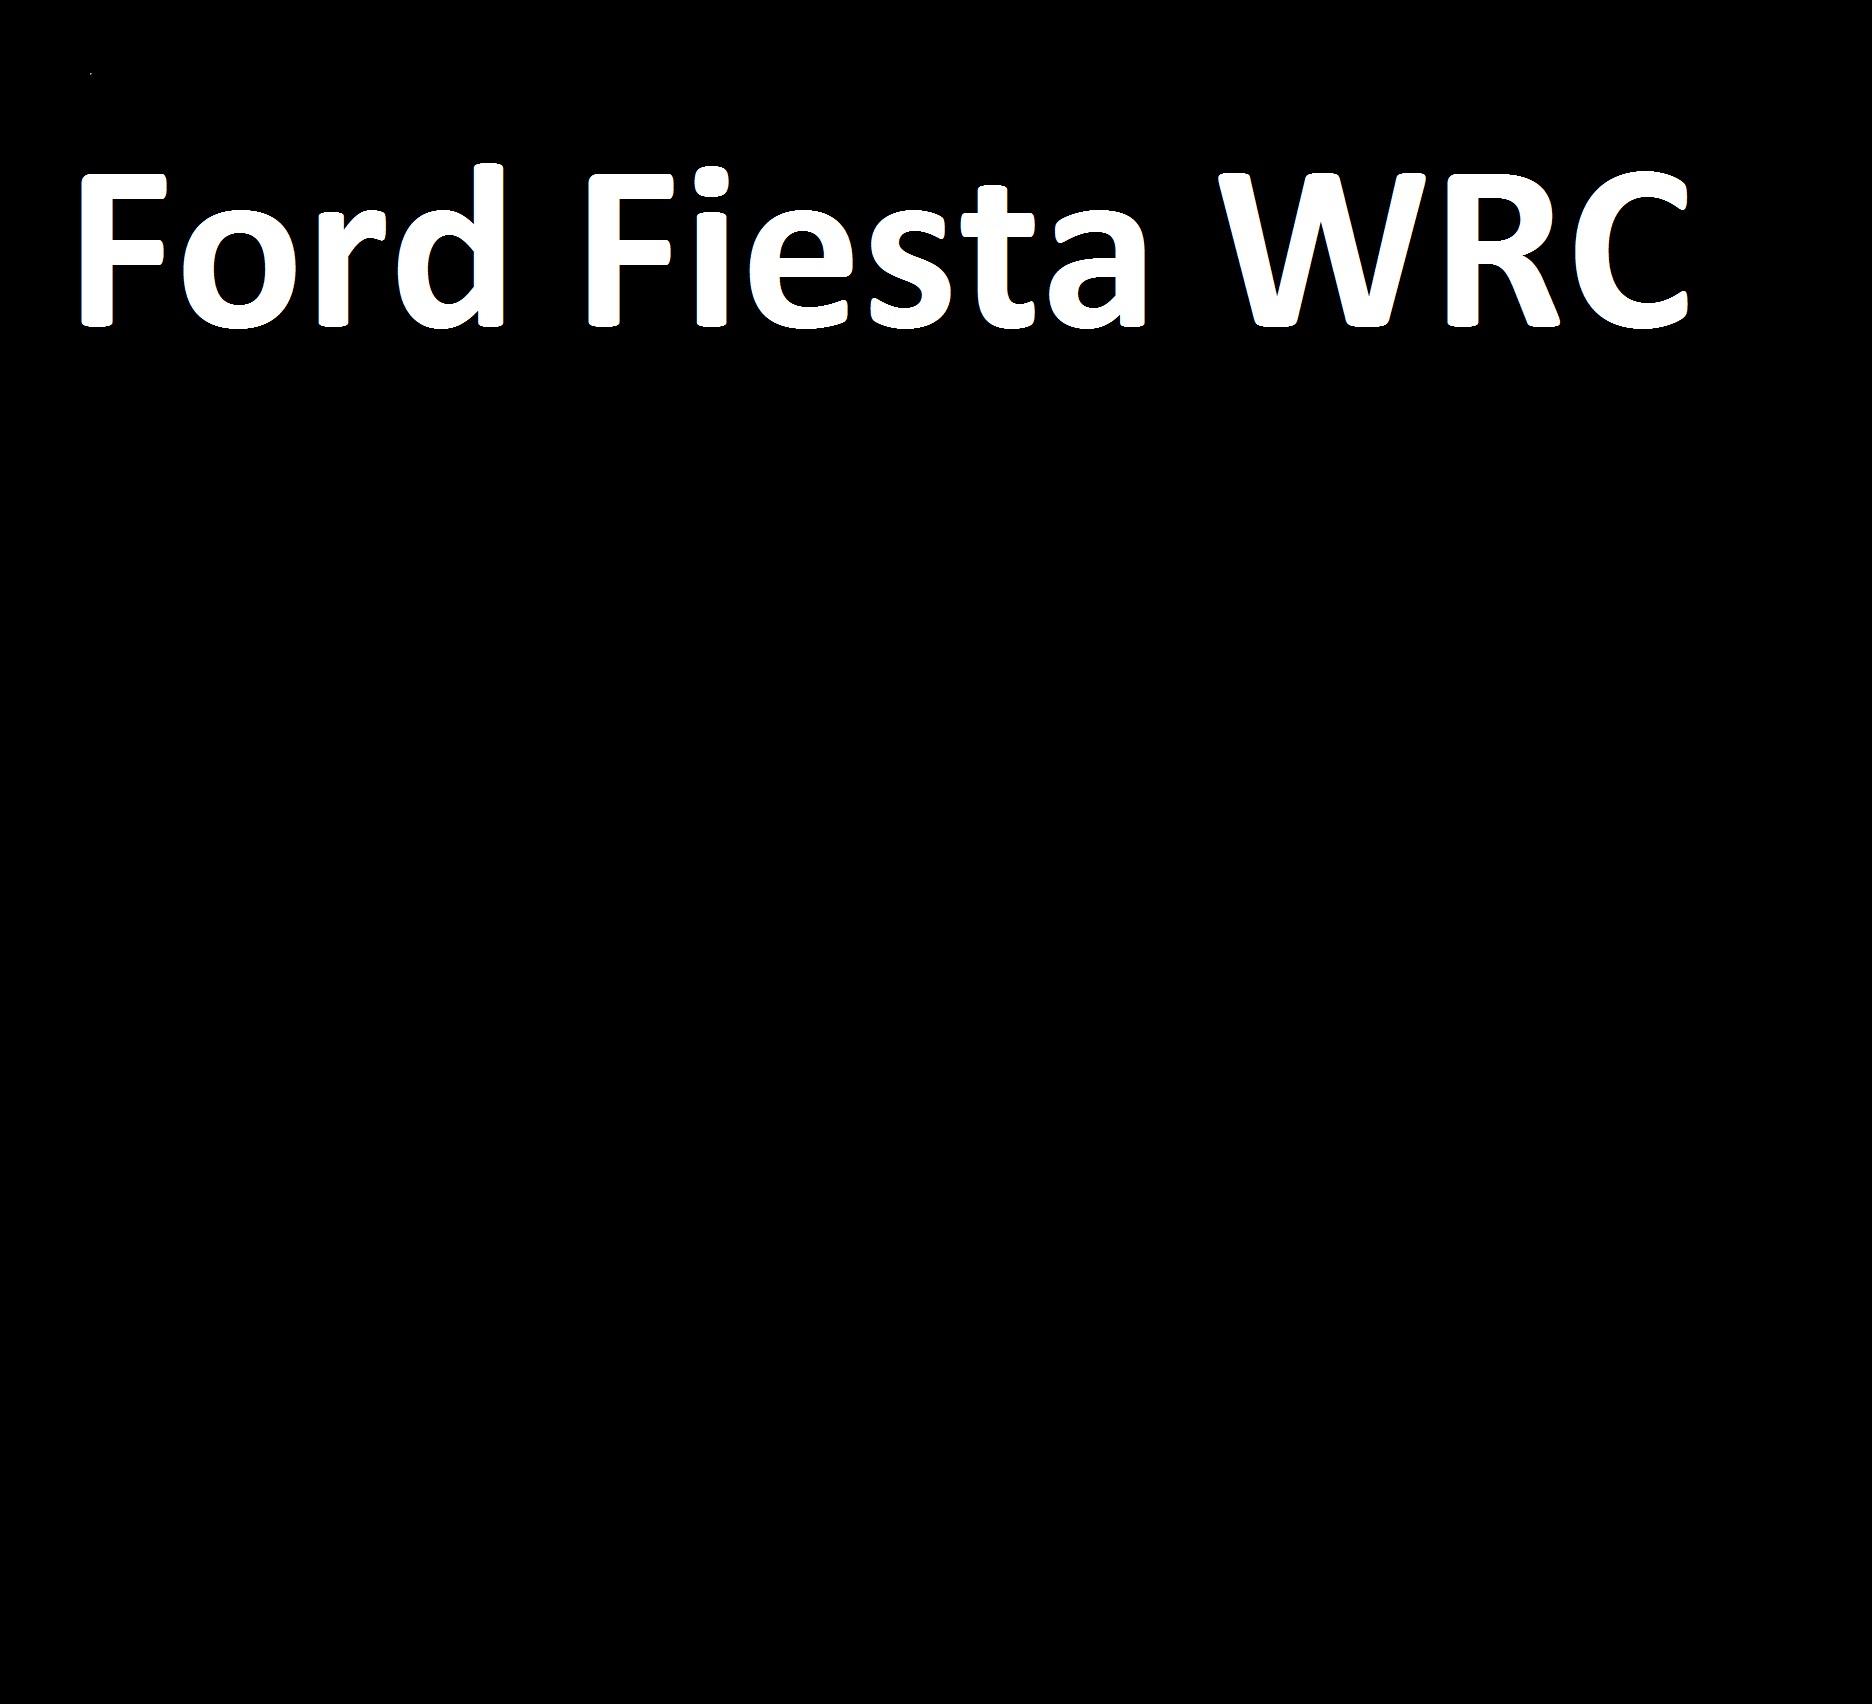 afbeelding van fiesta WRC, fiesta WRC bumper, fiesta WRC rallykit, fiesta MK7 rallykit, MK7 WRC front bumper, MK7 WRC back bumper, WRC bumper, MK7 fenders, WRC back bumper, WRC fenders,fiesta bumper, fiesta wide body, fiesta fenders, MK7 fenders, ford wide body kit, fiesta wide body 